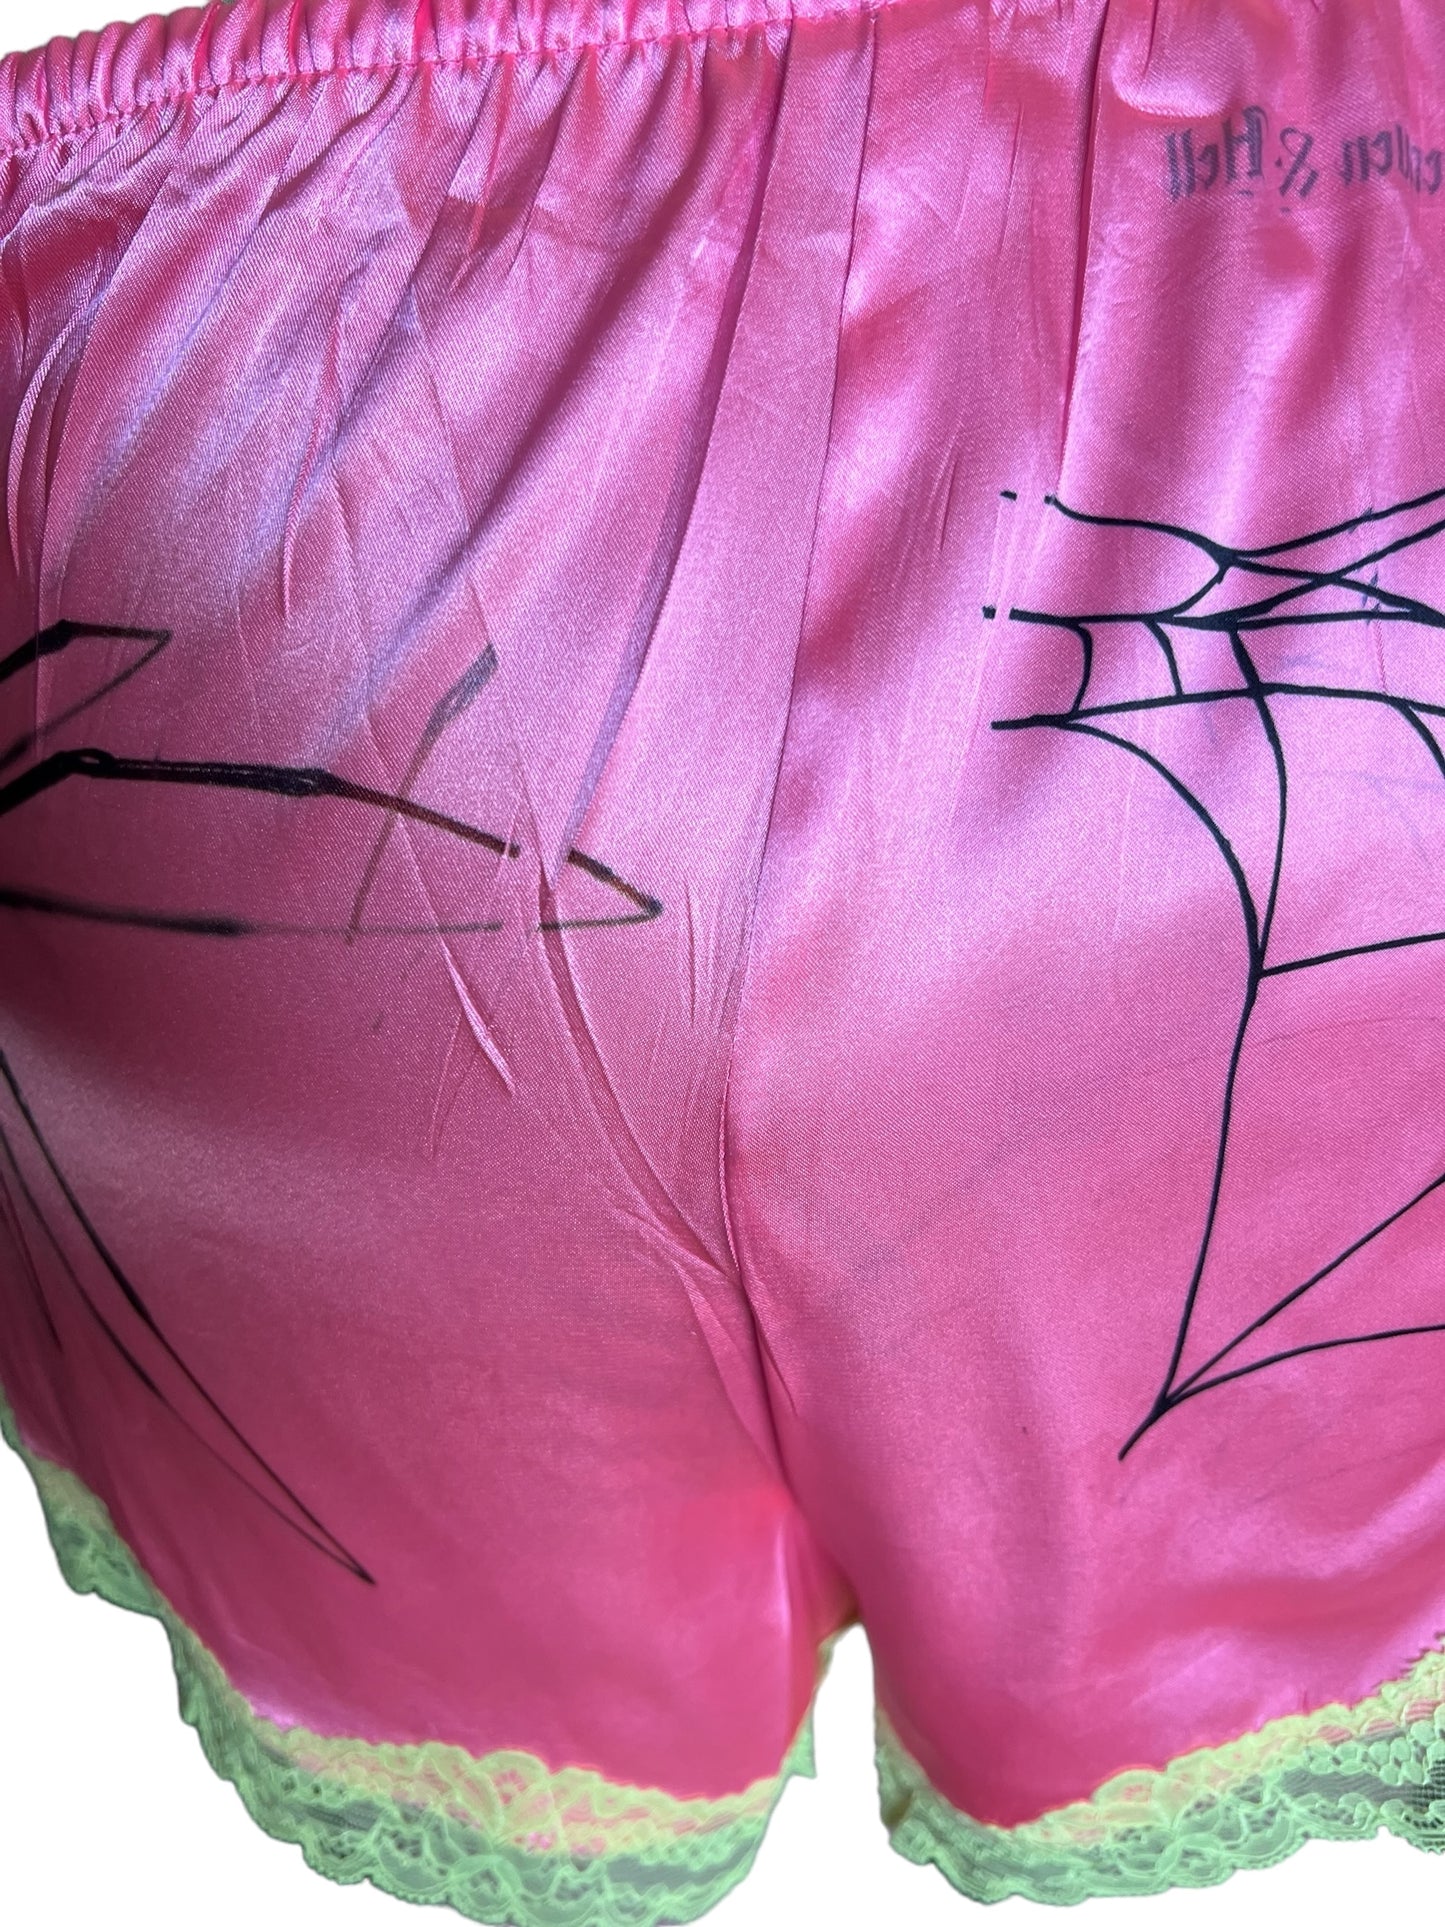 Spiderweb Pink Shorts - 2X/3X